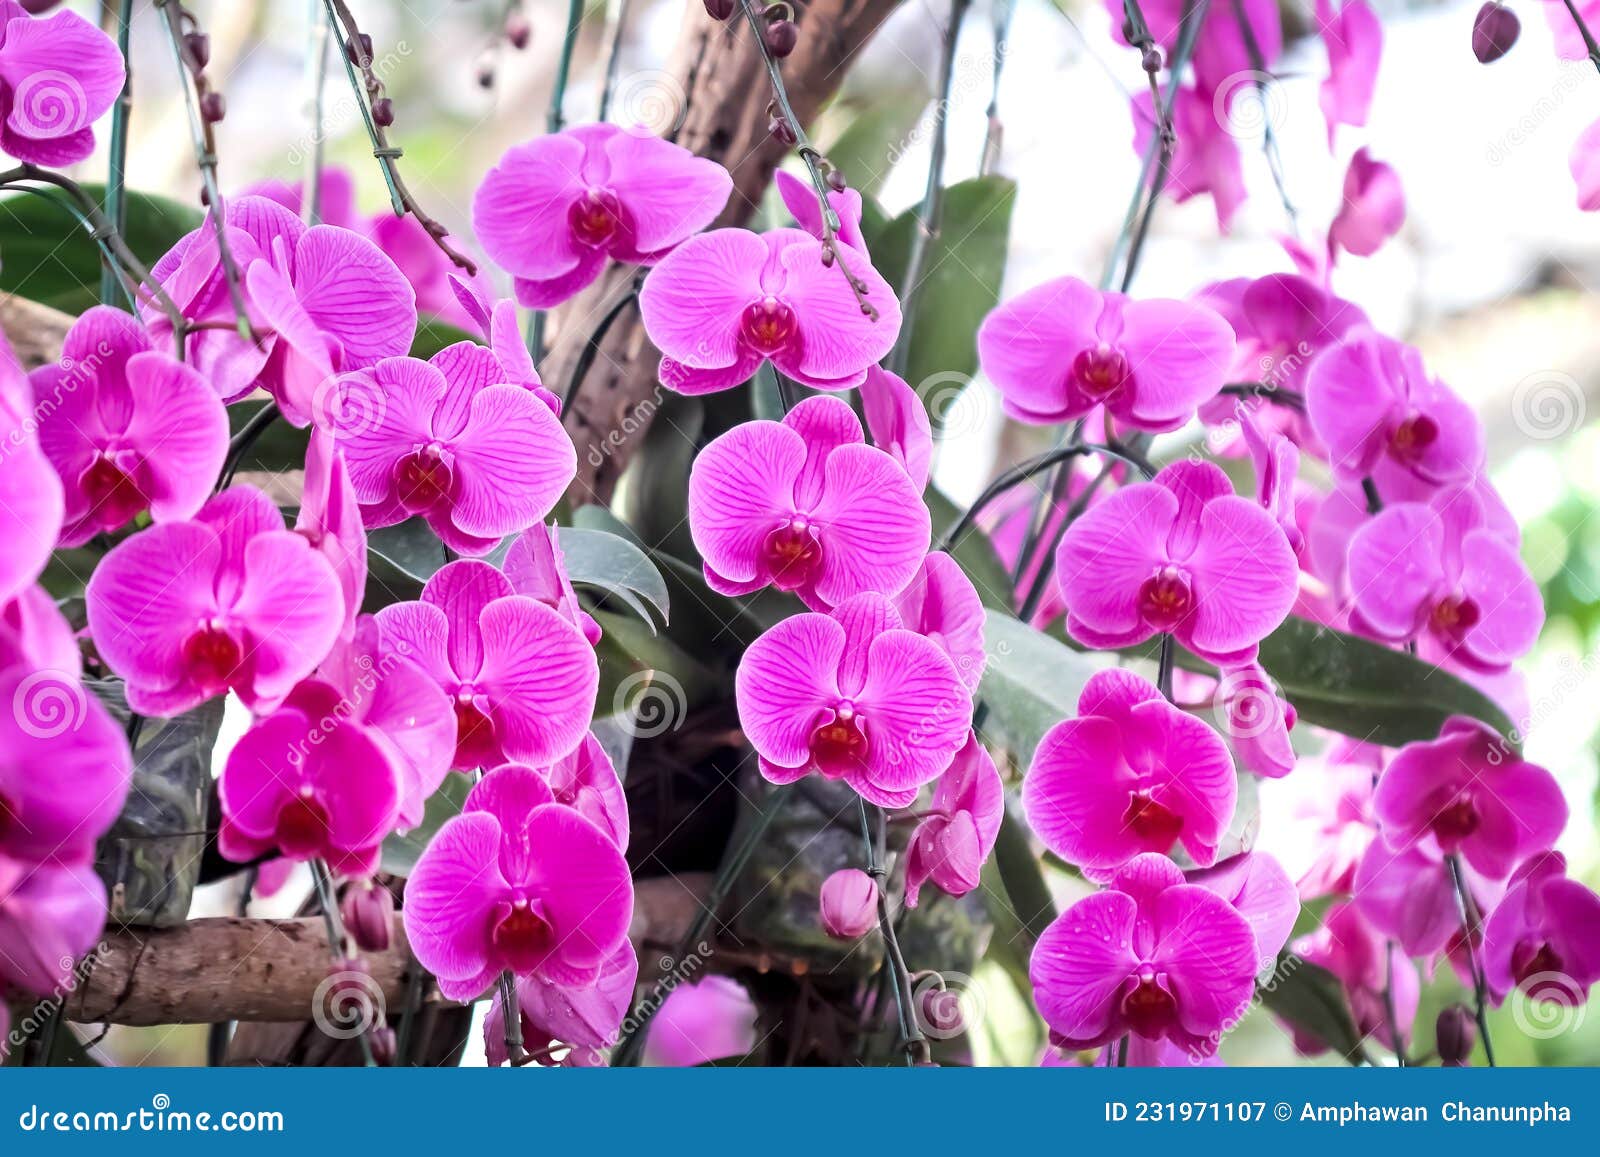 Orchidée De Vanda Rose Avec Gouttes D'eau Fleurissant Dans Le Jardin Image  stock - Image du floral, jardin: 231971107